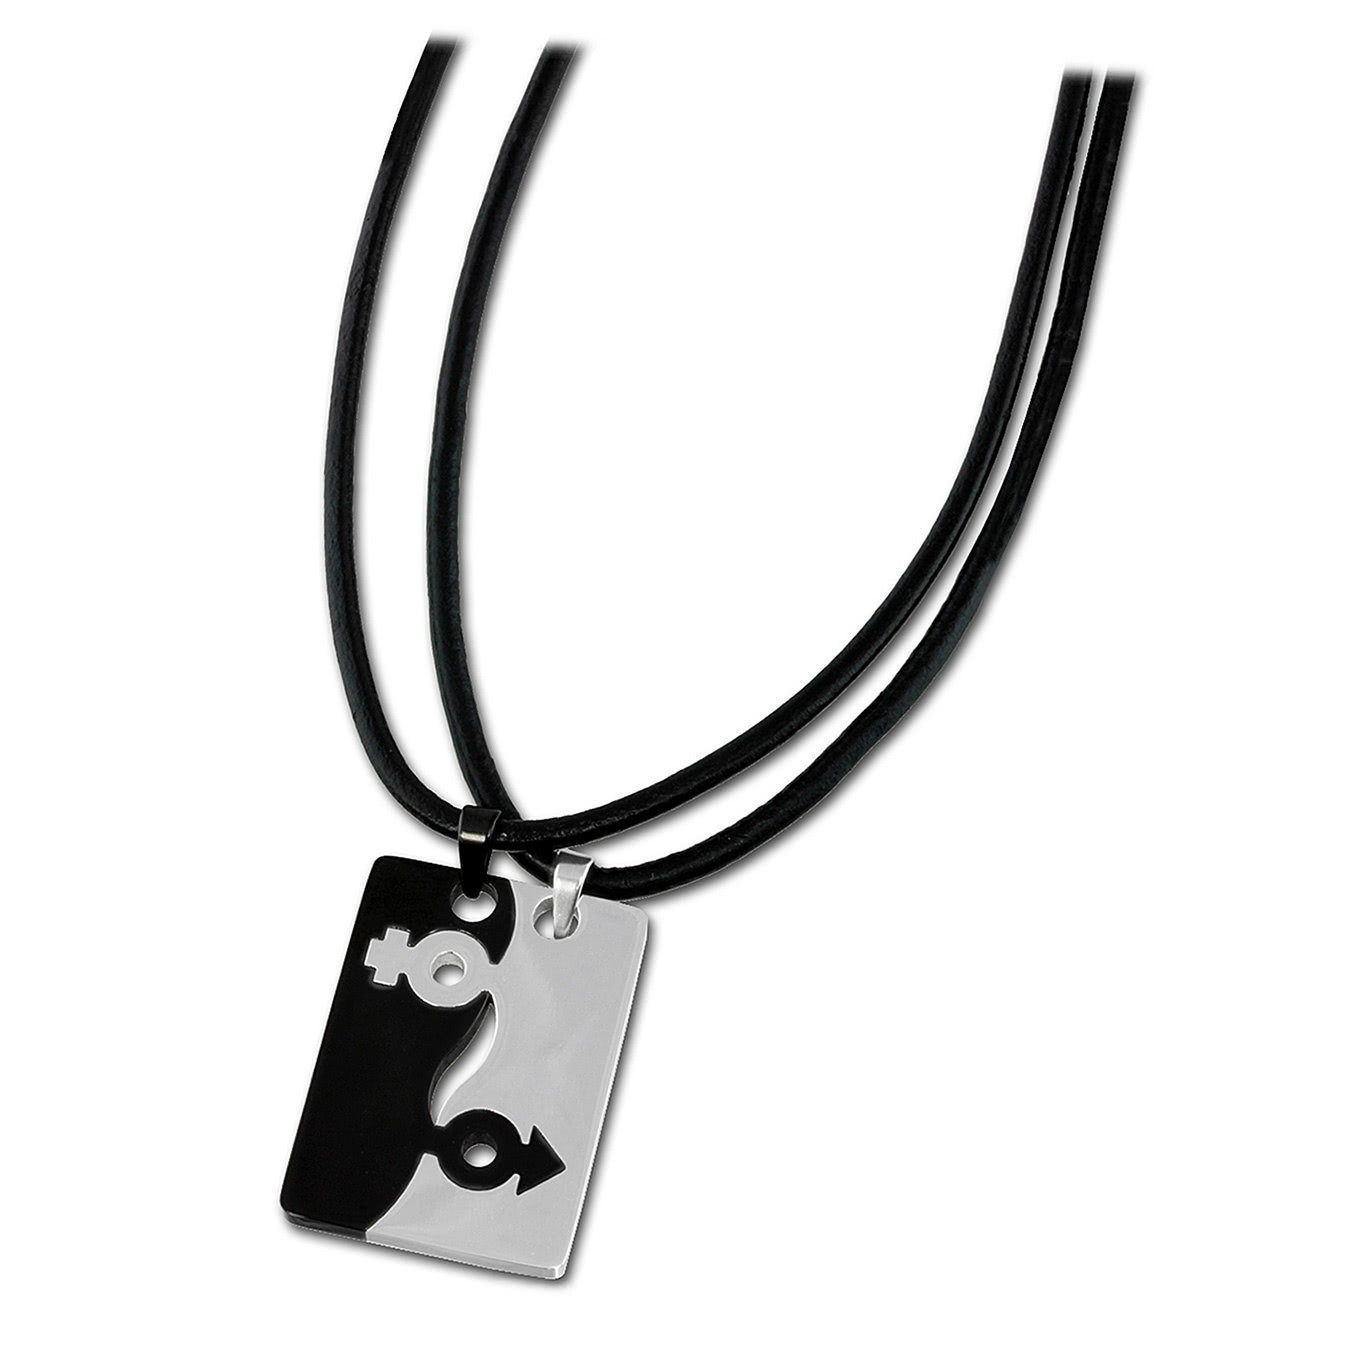 5cm Amello (Stainl ca. (Halskette), Halskette Amello Edelstahlkette silber + Edelstahl Damen-Halskette schwarz glitzer Verlängerung, 50cm (Sexus)